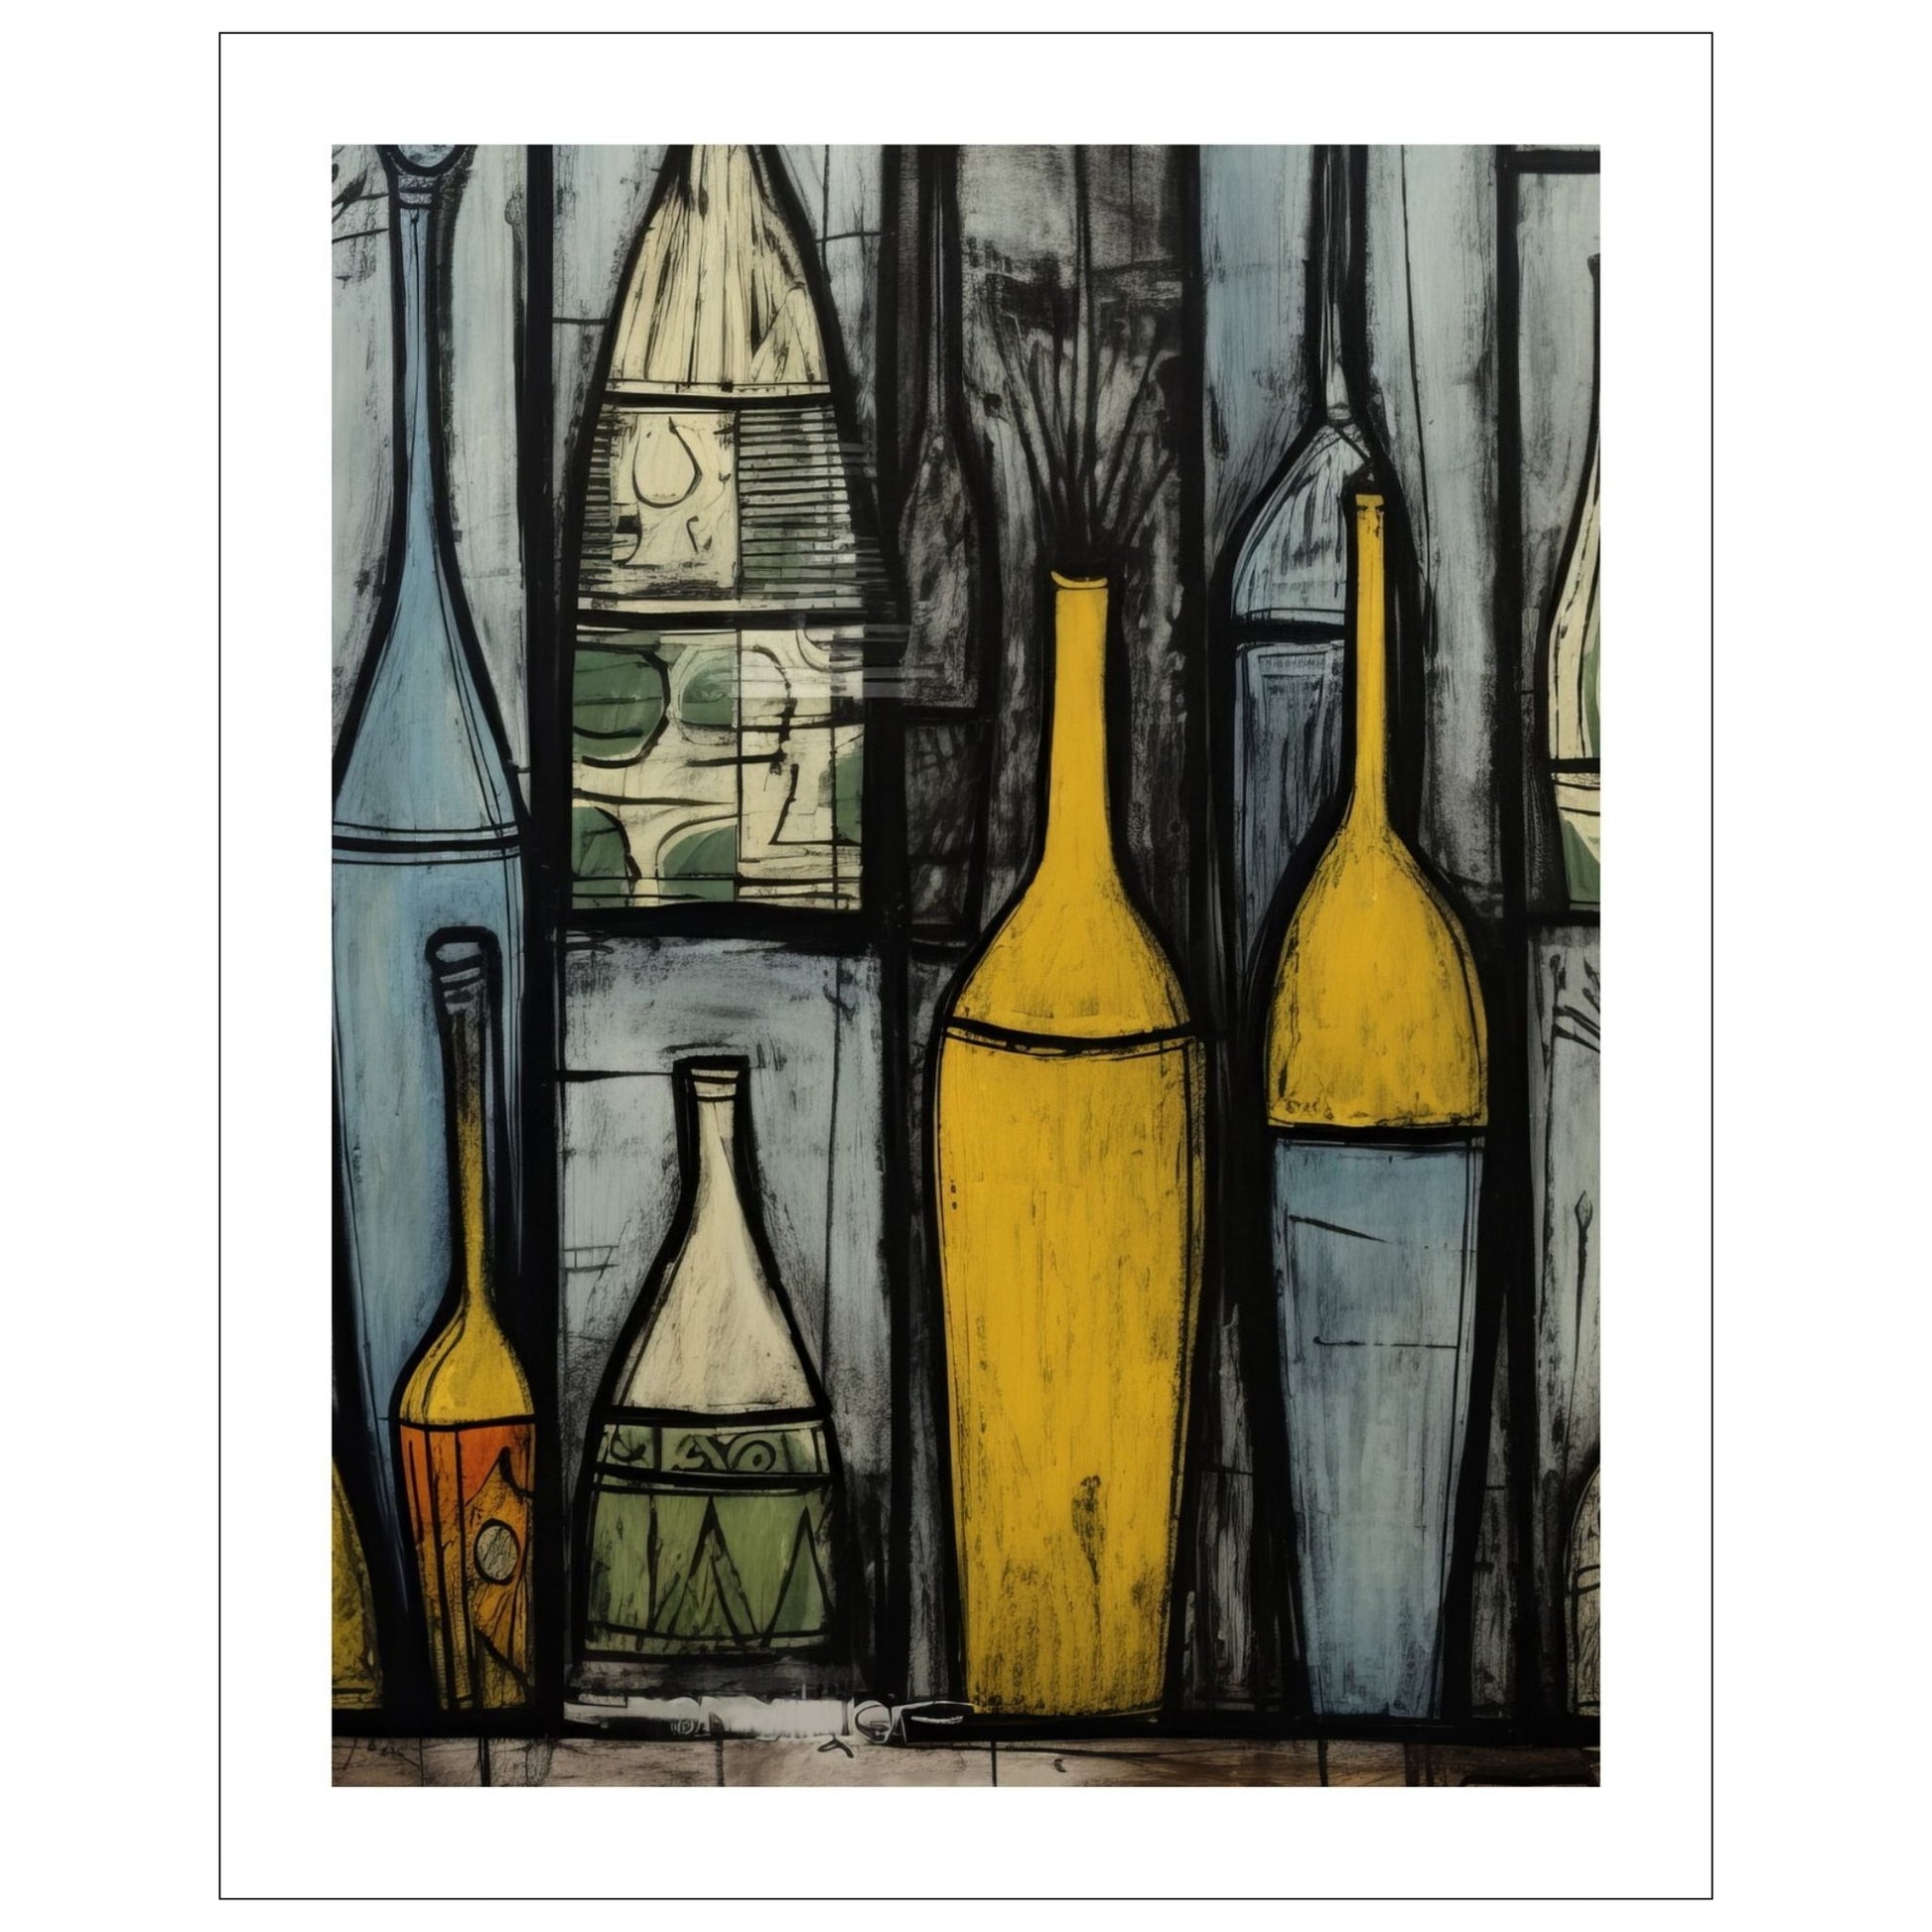 Grafisk plakatmotiv med dekorative flasker i ulike størrelser og fasonger. Motivet har oker, lyseblå, grå og sort som hovedfarger, og innslag av beige og grønne felter. 